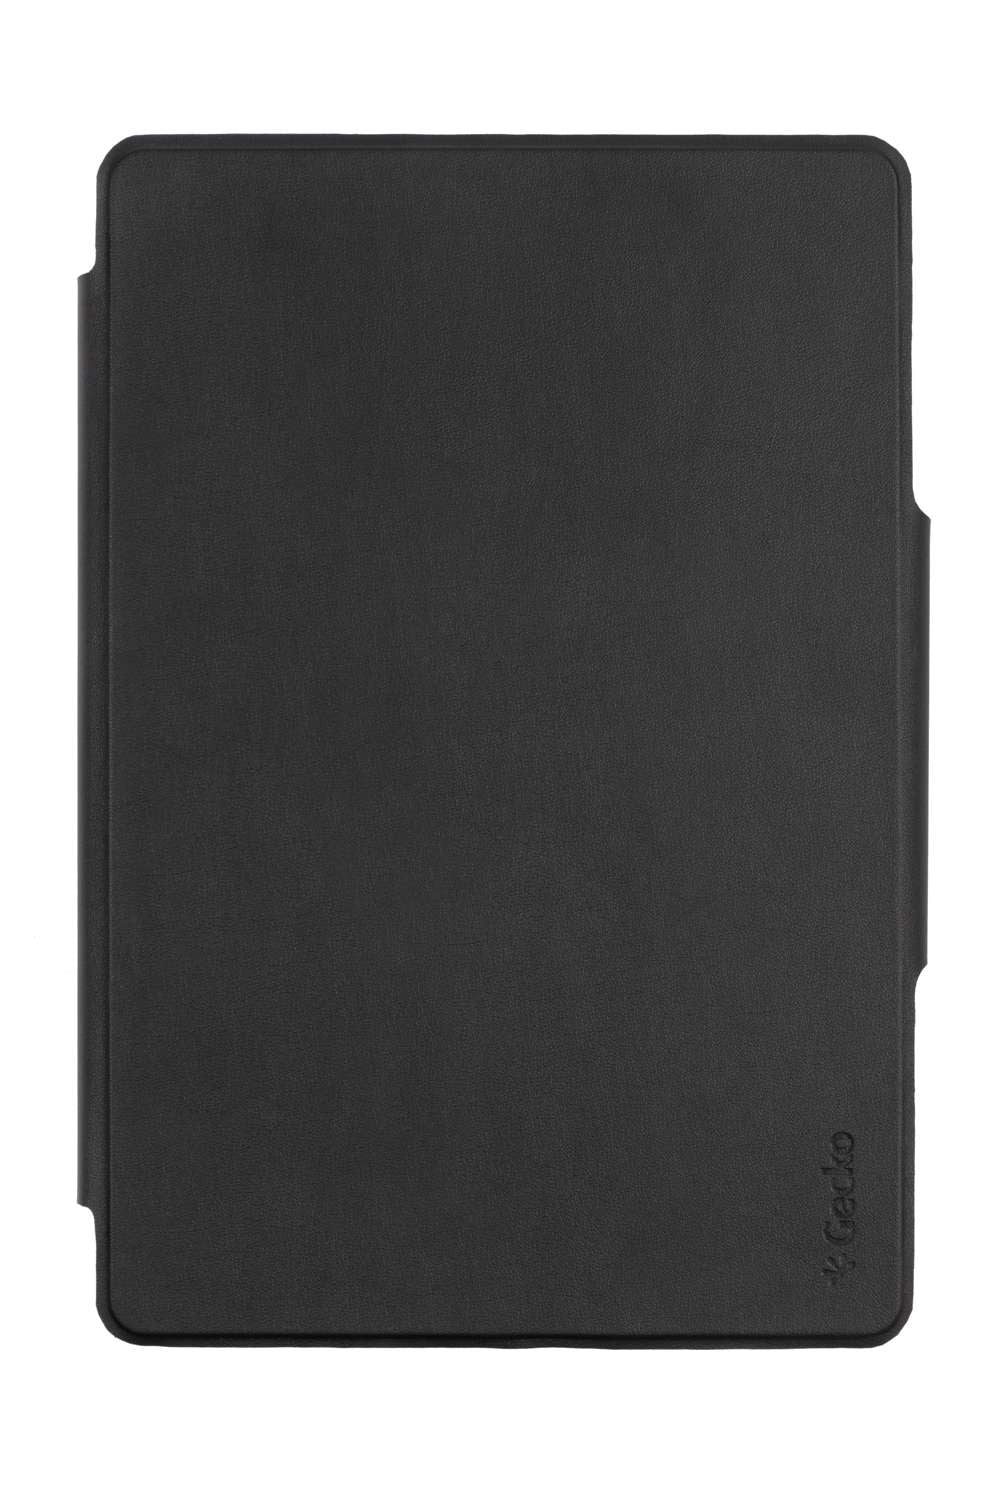 Gecko Covers Hoes met Toetsenbord - Geschikt voor Huawei Mediapad M5 (Pro) 2018 - 10.8 inch - Zwart